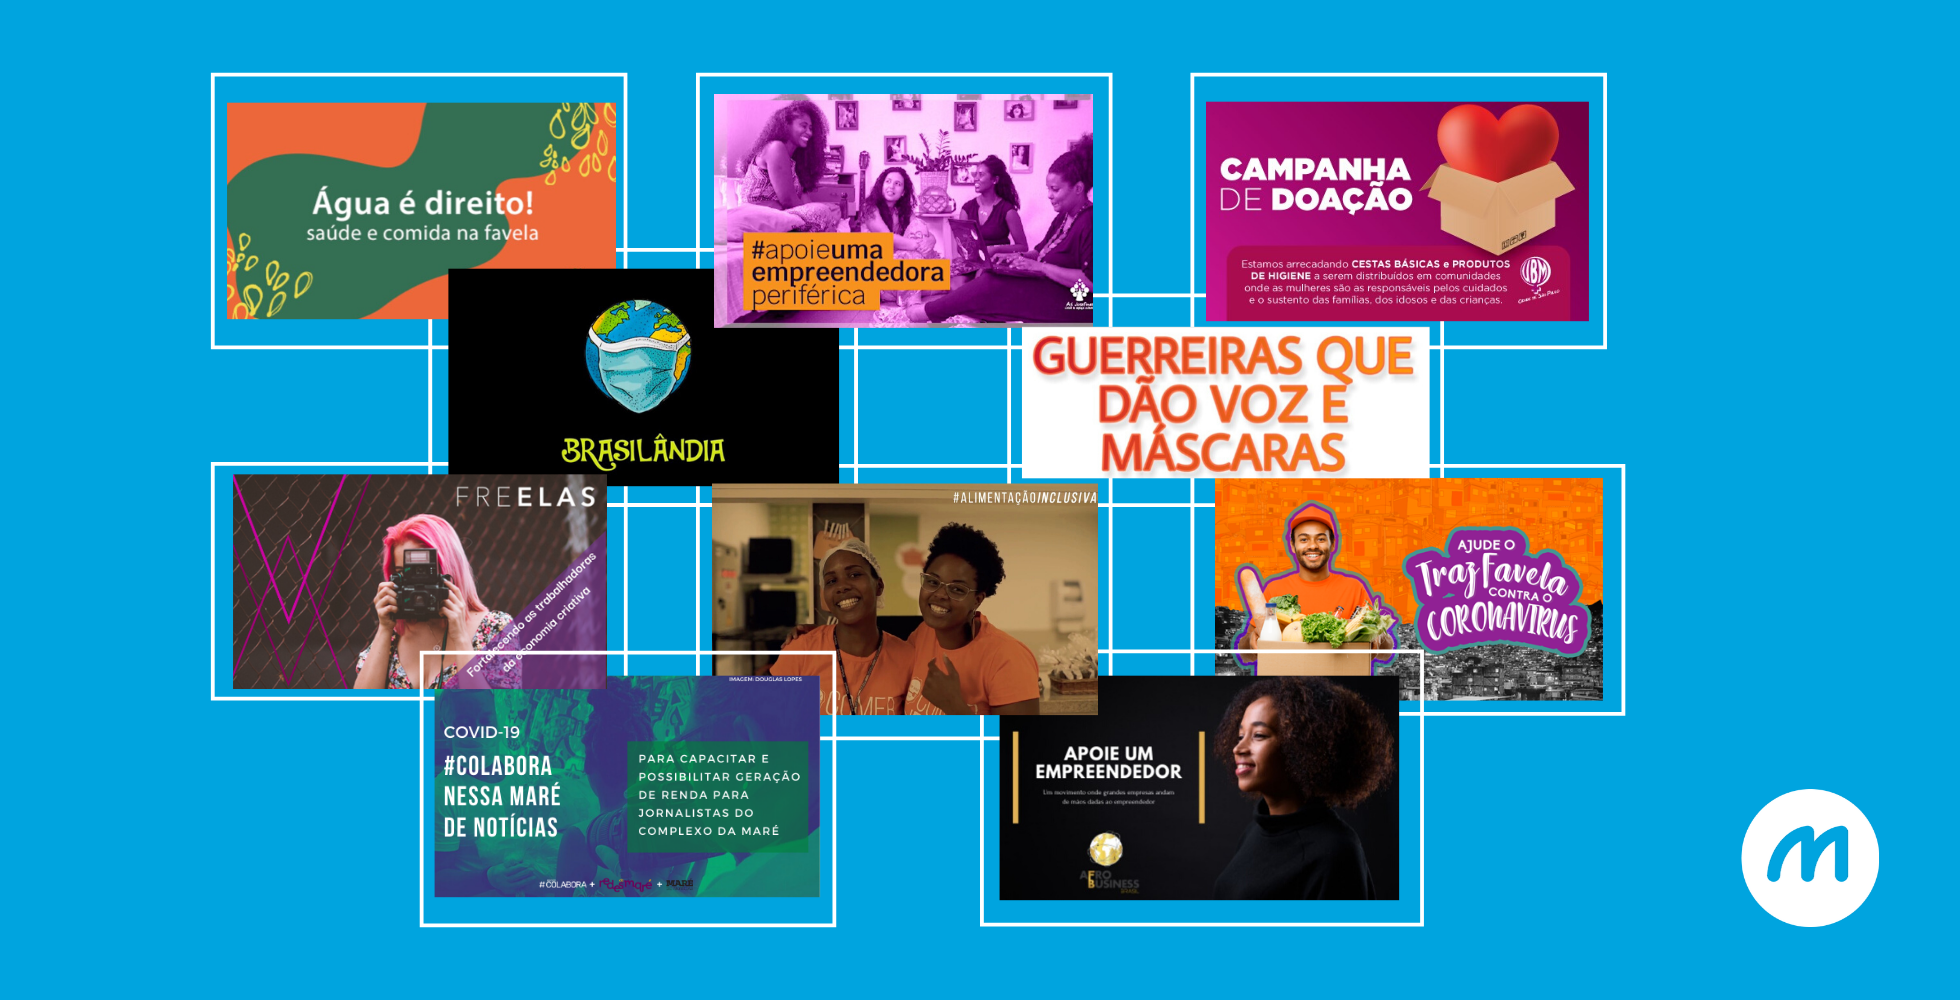 O fundo Enfrente está apoiando projetos em periferias de todo o Brasil. Venha conhecer as que decidimos apoiar!